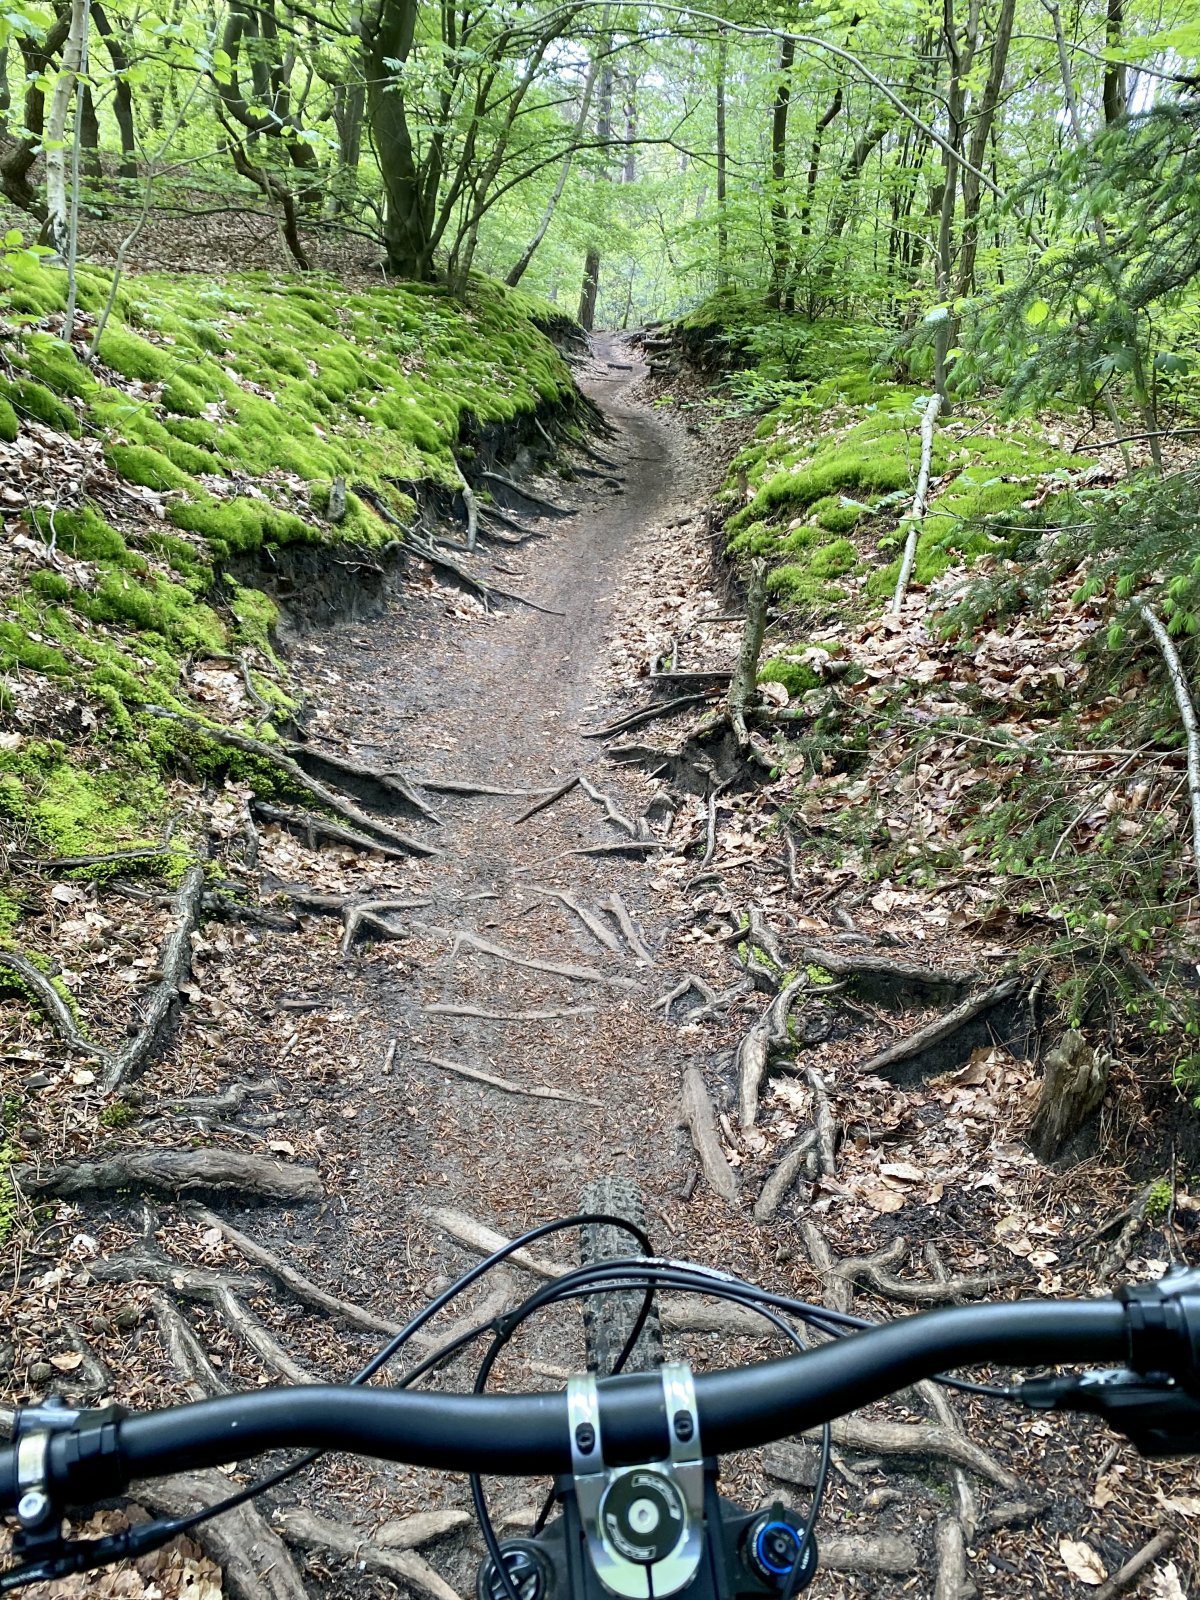 Völlig geflasht. Nie gesehenes Trail-Paradies Hoge Veluwe in NL | MTB-News.de  | IBC Mountainbike Forum